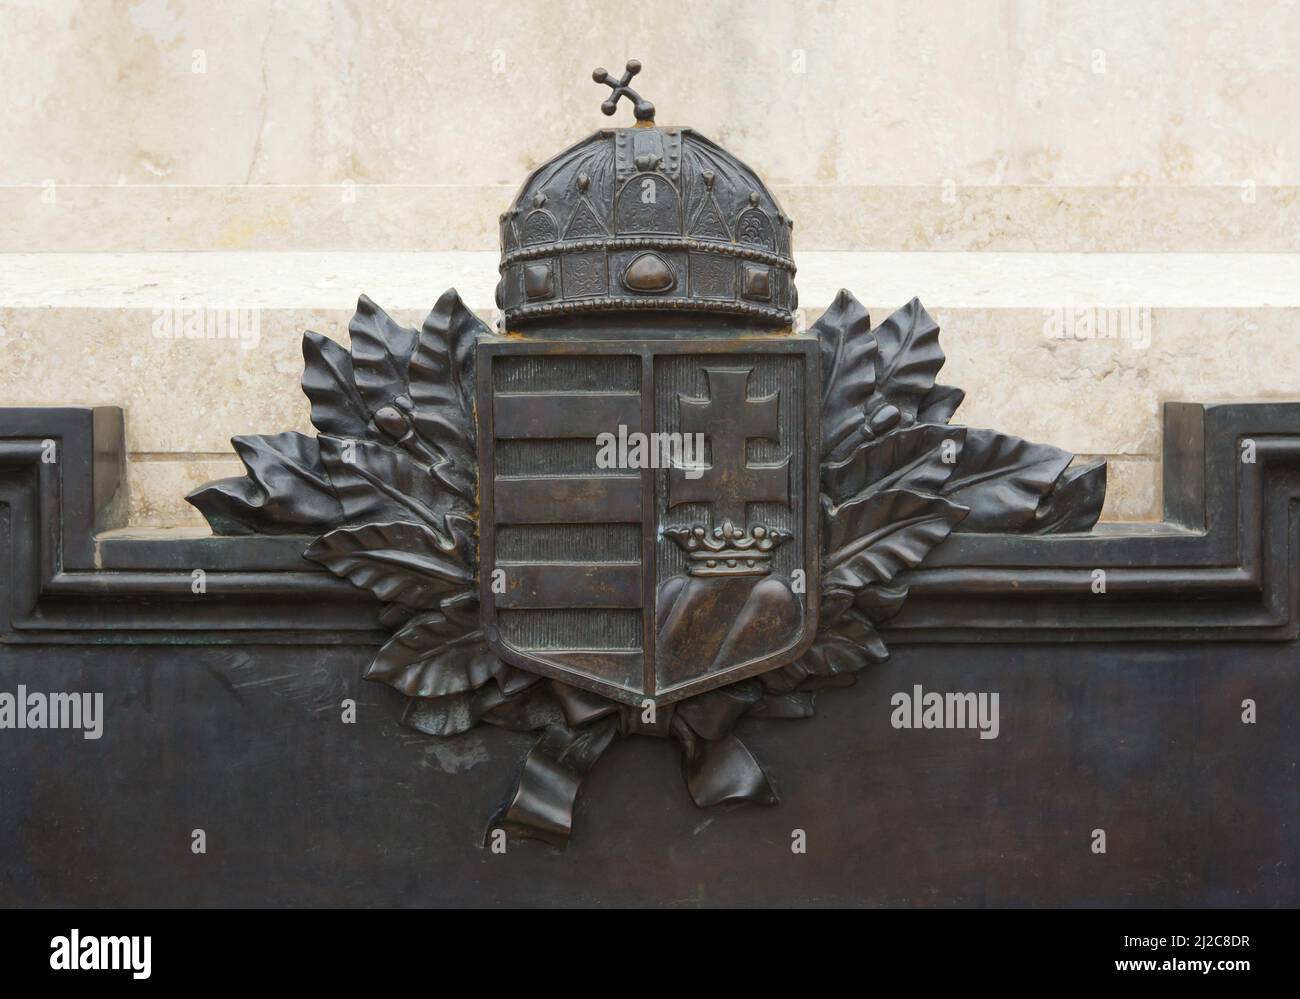 Das bronzene Wappen Ungarns wird von der Heiligen Krone des Heiligen Stephanus geziert, die auf dem Denkmal für die im Ersten Weltkrieg gefallenen Ungarn in der ungarischen Stadt Vác abgebildet ist. Stockfoto